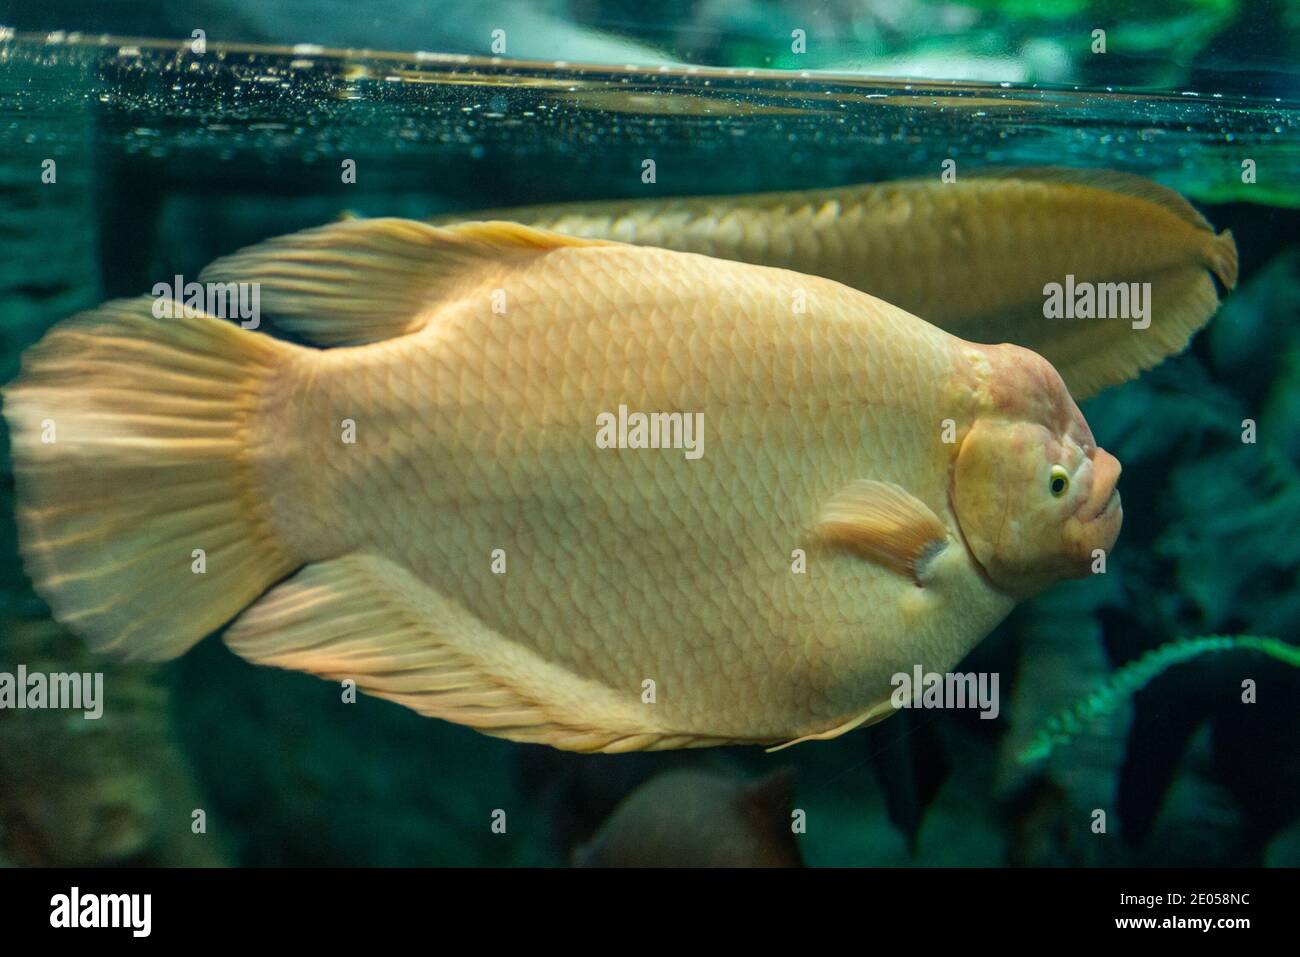 Face of Giant gourami fish or Osphronemus goramy. Stock Photo